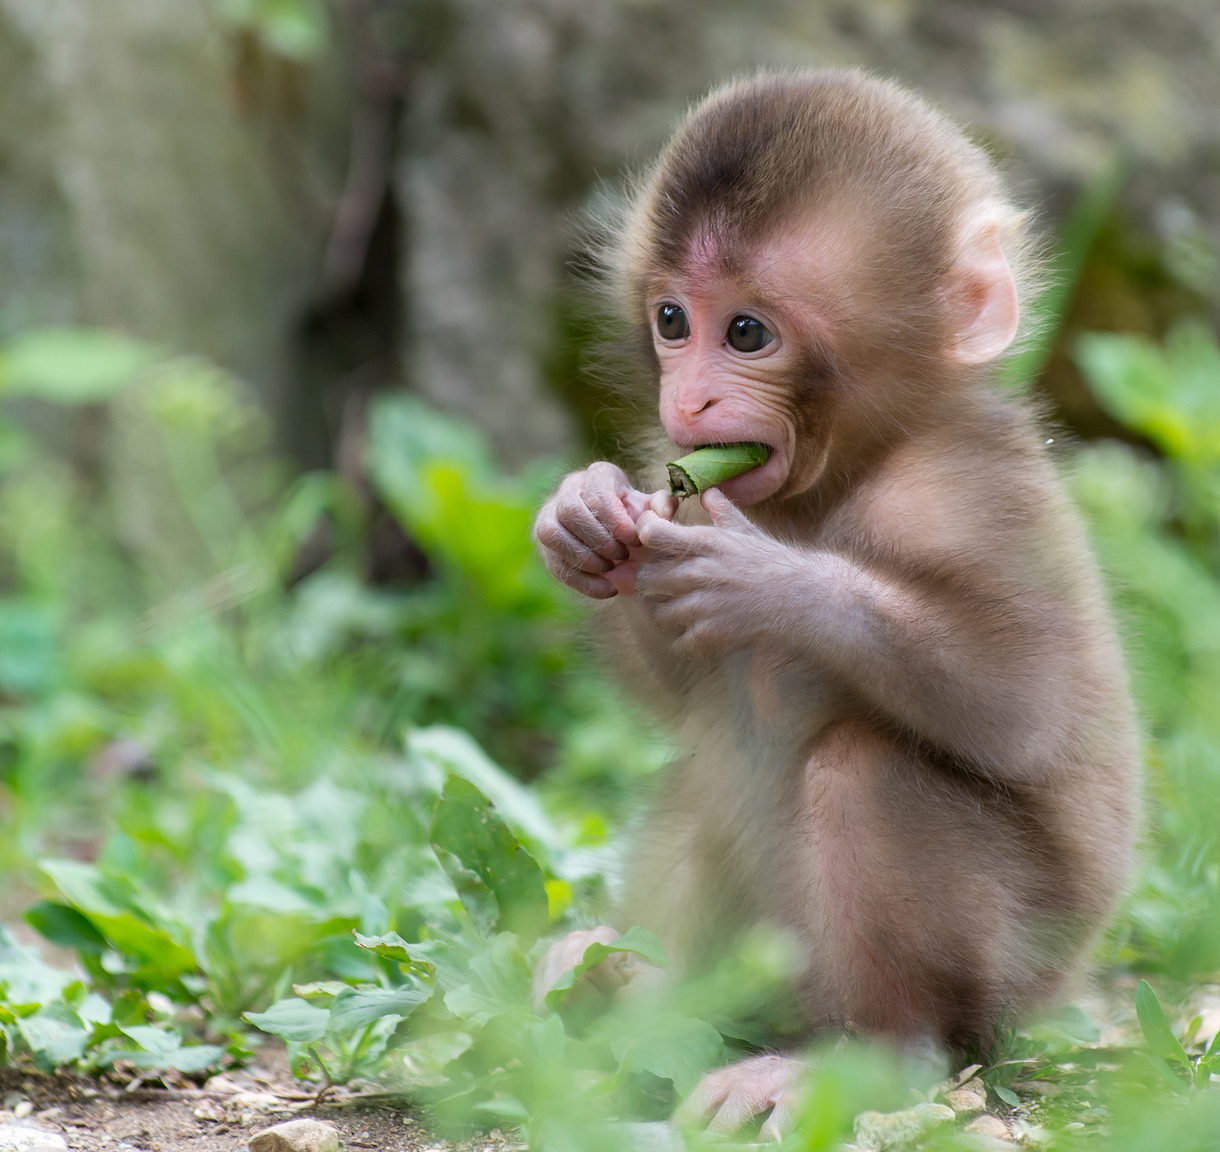 Con khỉ cute luôn là một chủ đề thú vị để khám phá. Hãy cùng xem hình ảnh các chú khỉ đáng yêu và thân thiện của chúng tôi để cảm nhận được sự đáng yêu và vui nhộn của chúng.